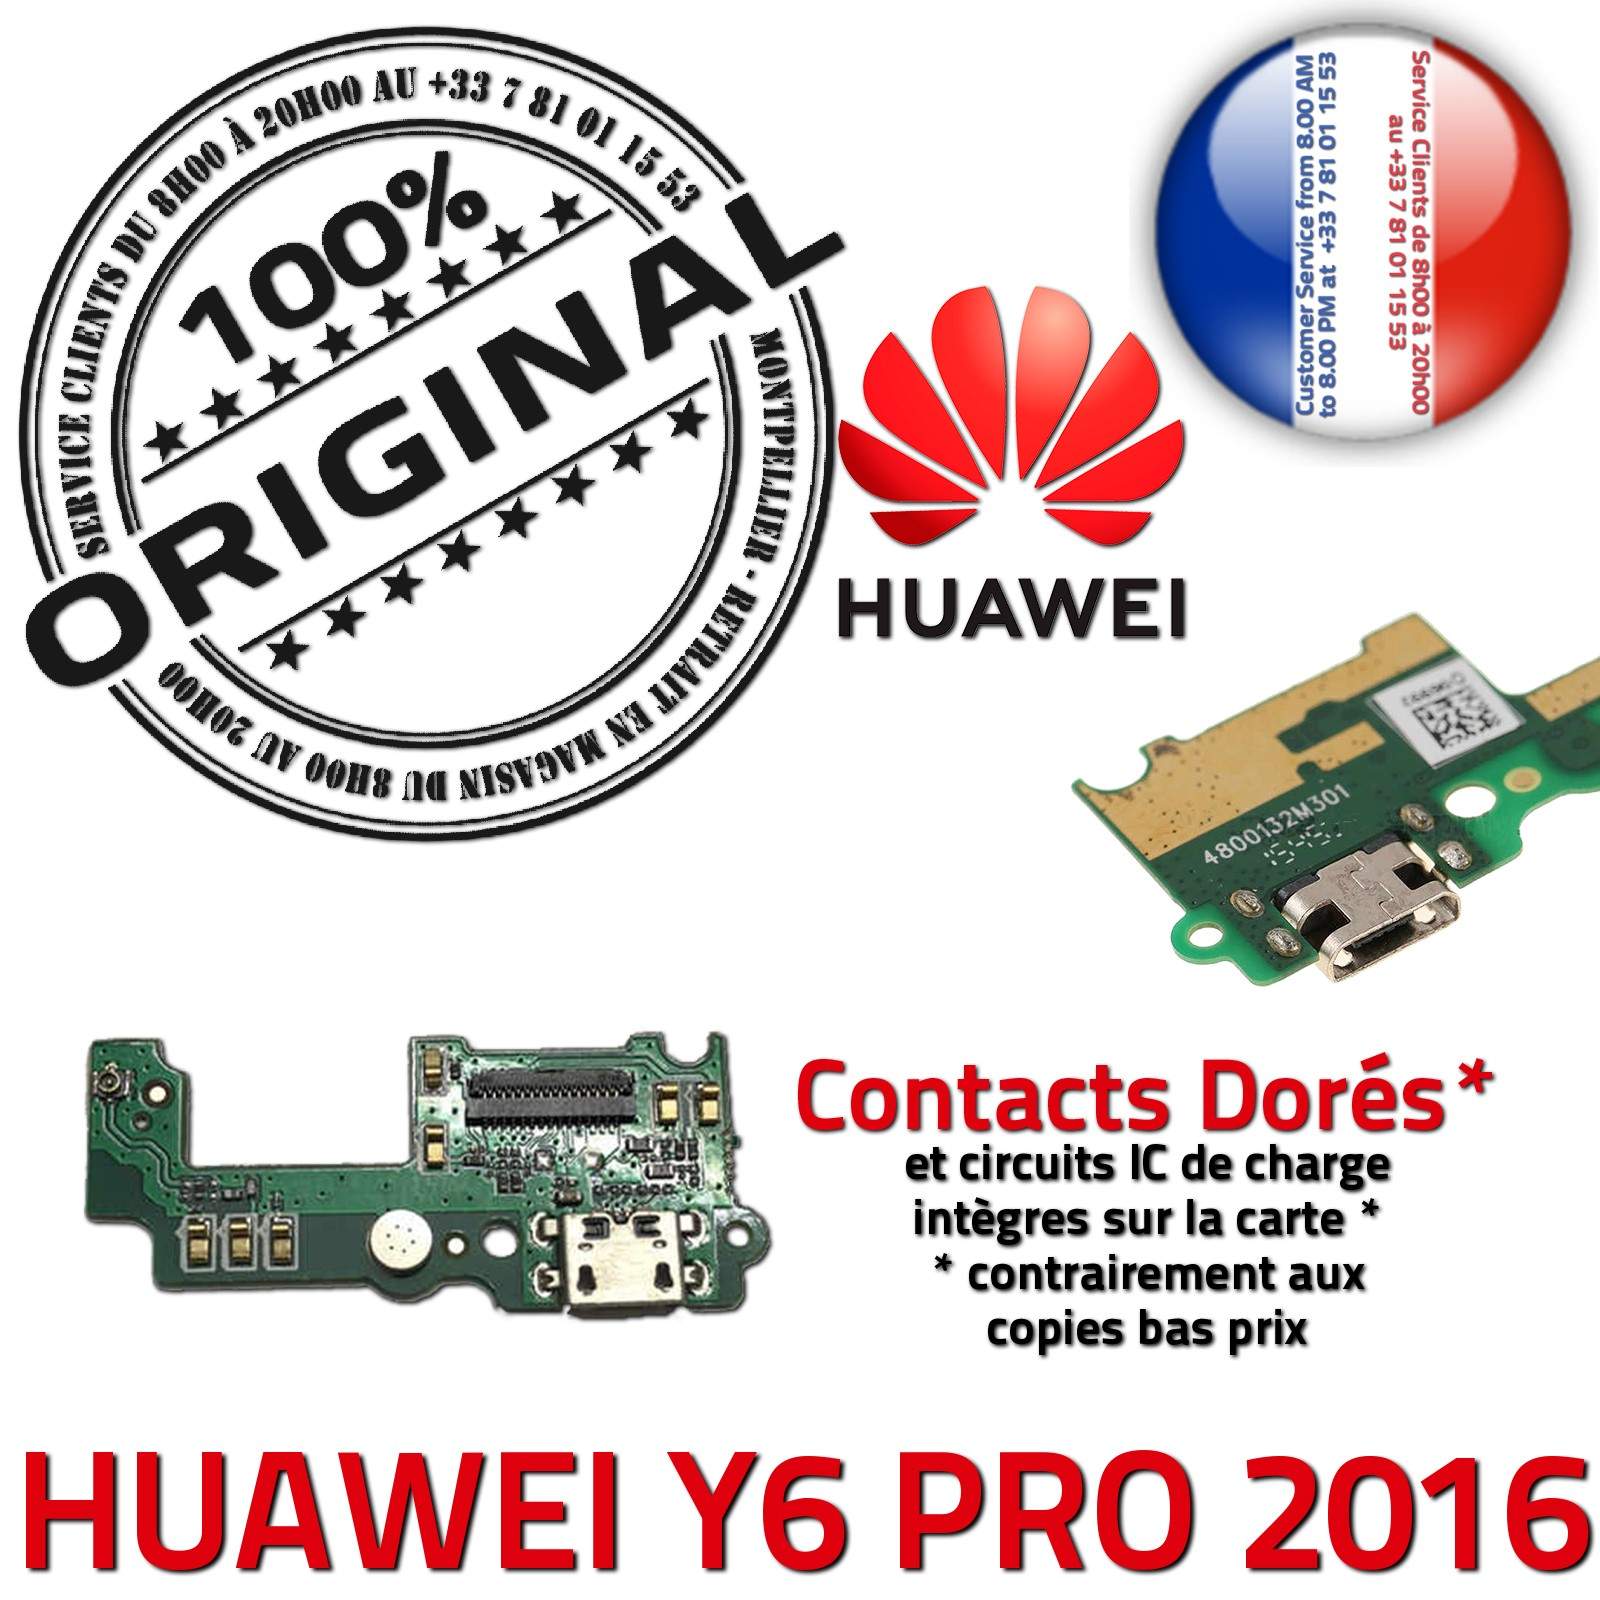 ORIGINAL Huawei Y6 PRO 2016 Microphone Téléphone Connecteur Charge Prise Chargeur USB Nappe OFFICIELLE Qualité Antenne RESEAU